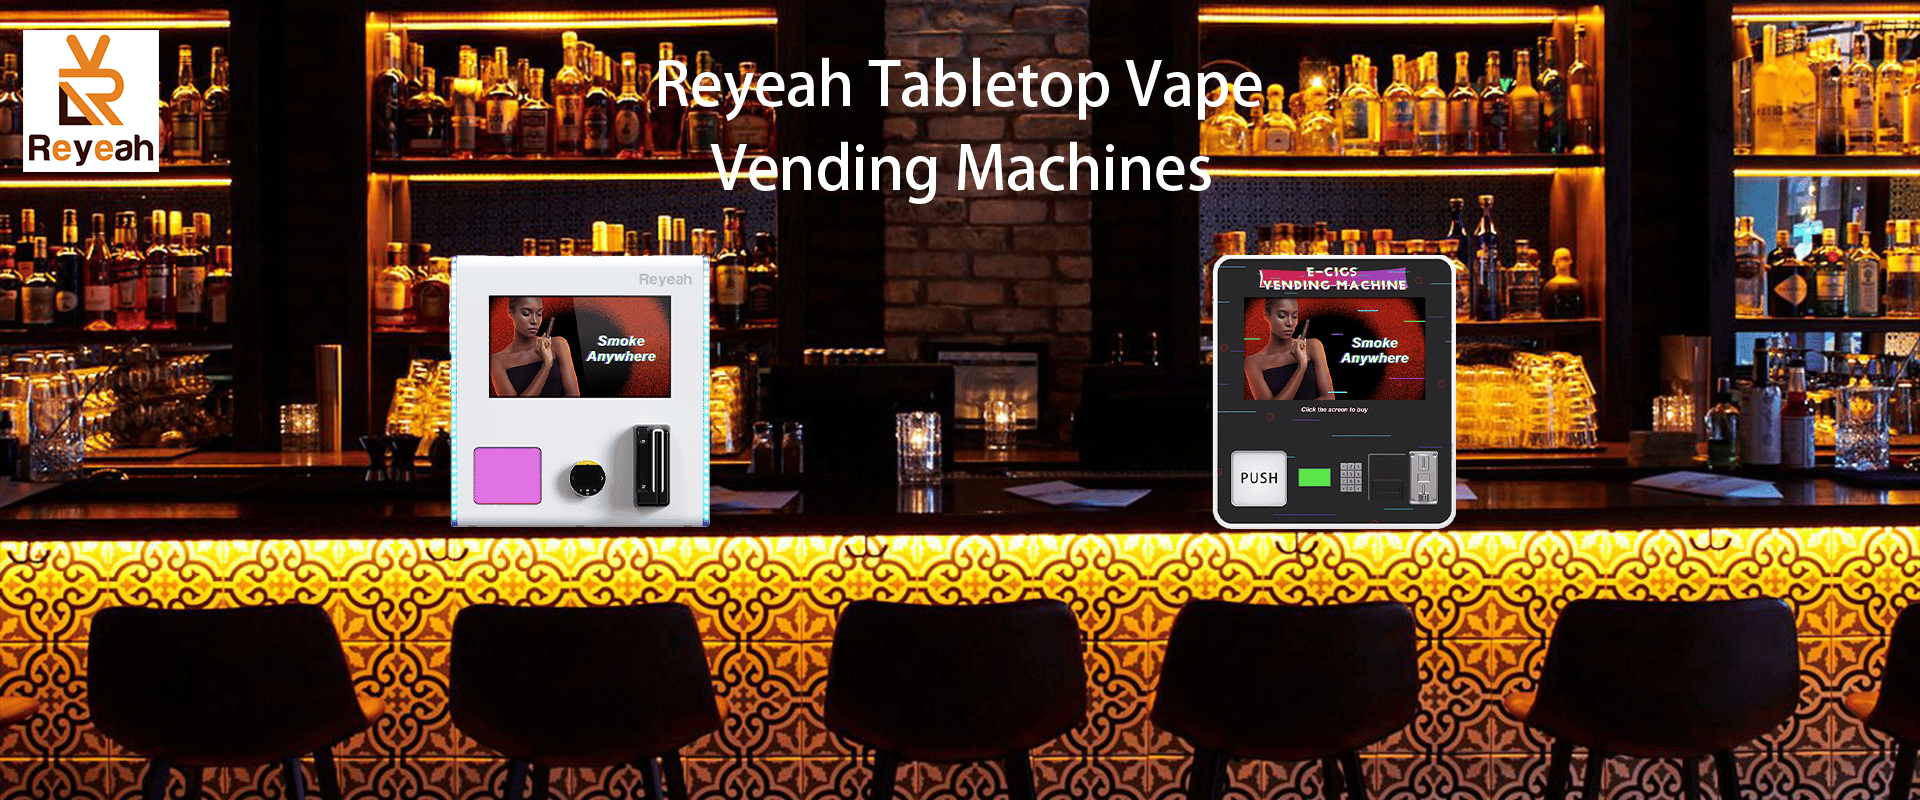 Reyeah Tabletop Vape Vending Machines